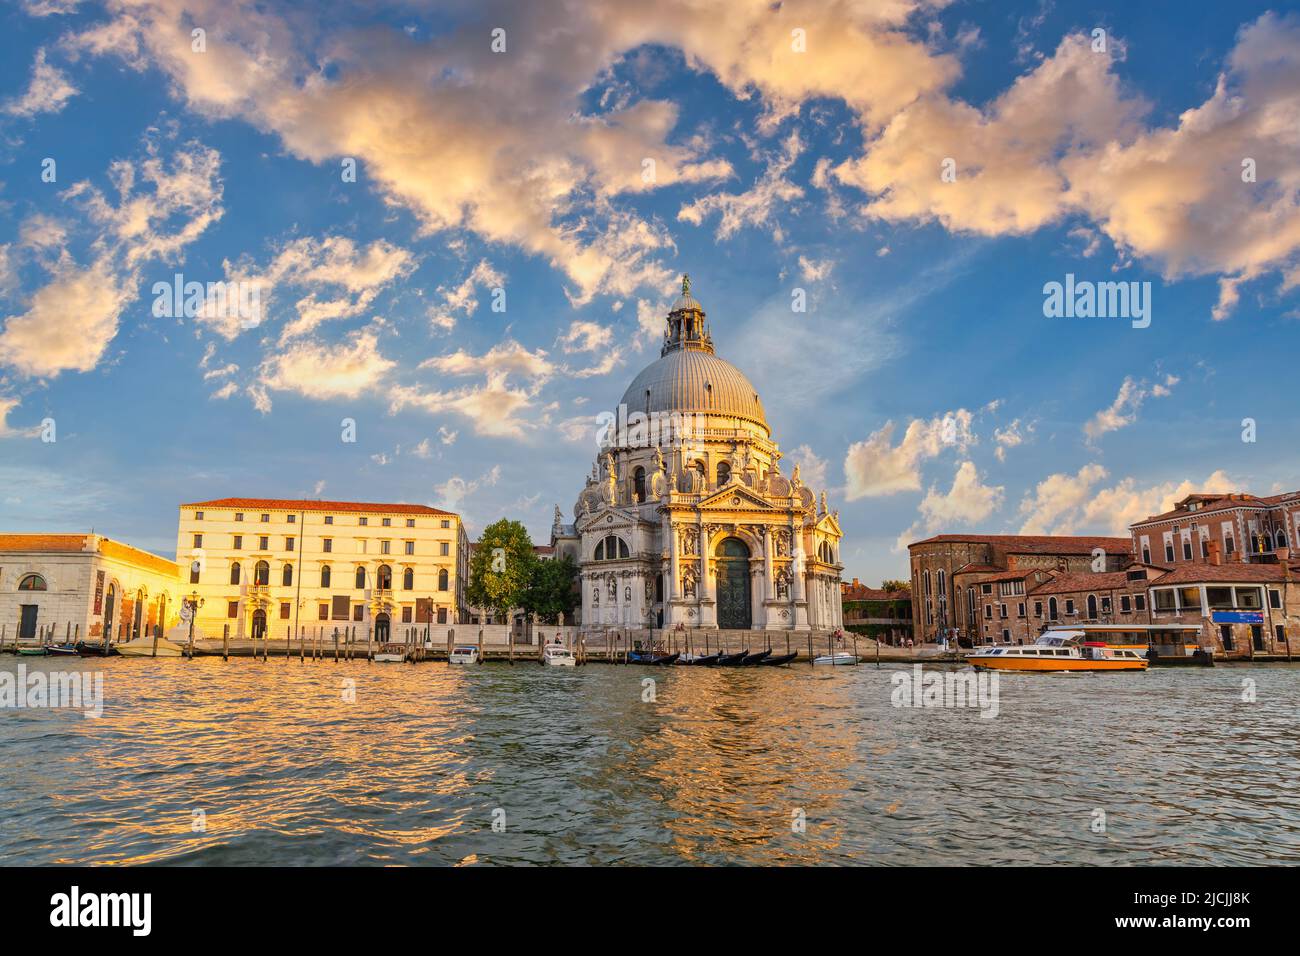 Venecia Italia, puesta del sol en el horizonte de la ciudad en el Gran Canal de Venecia y la Basílica de Santa Maria della Salute Foto de stock